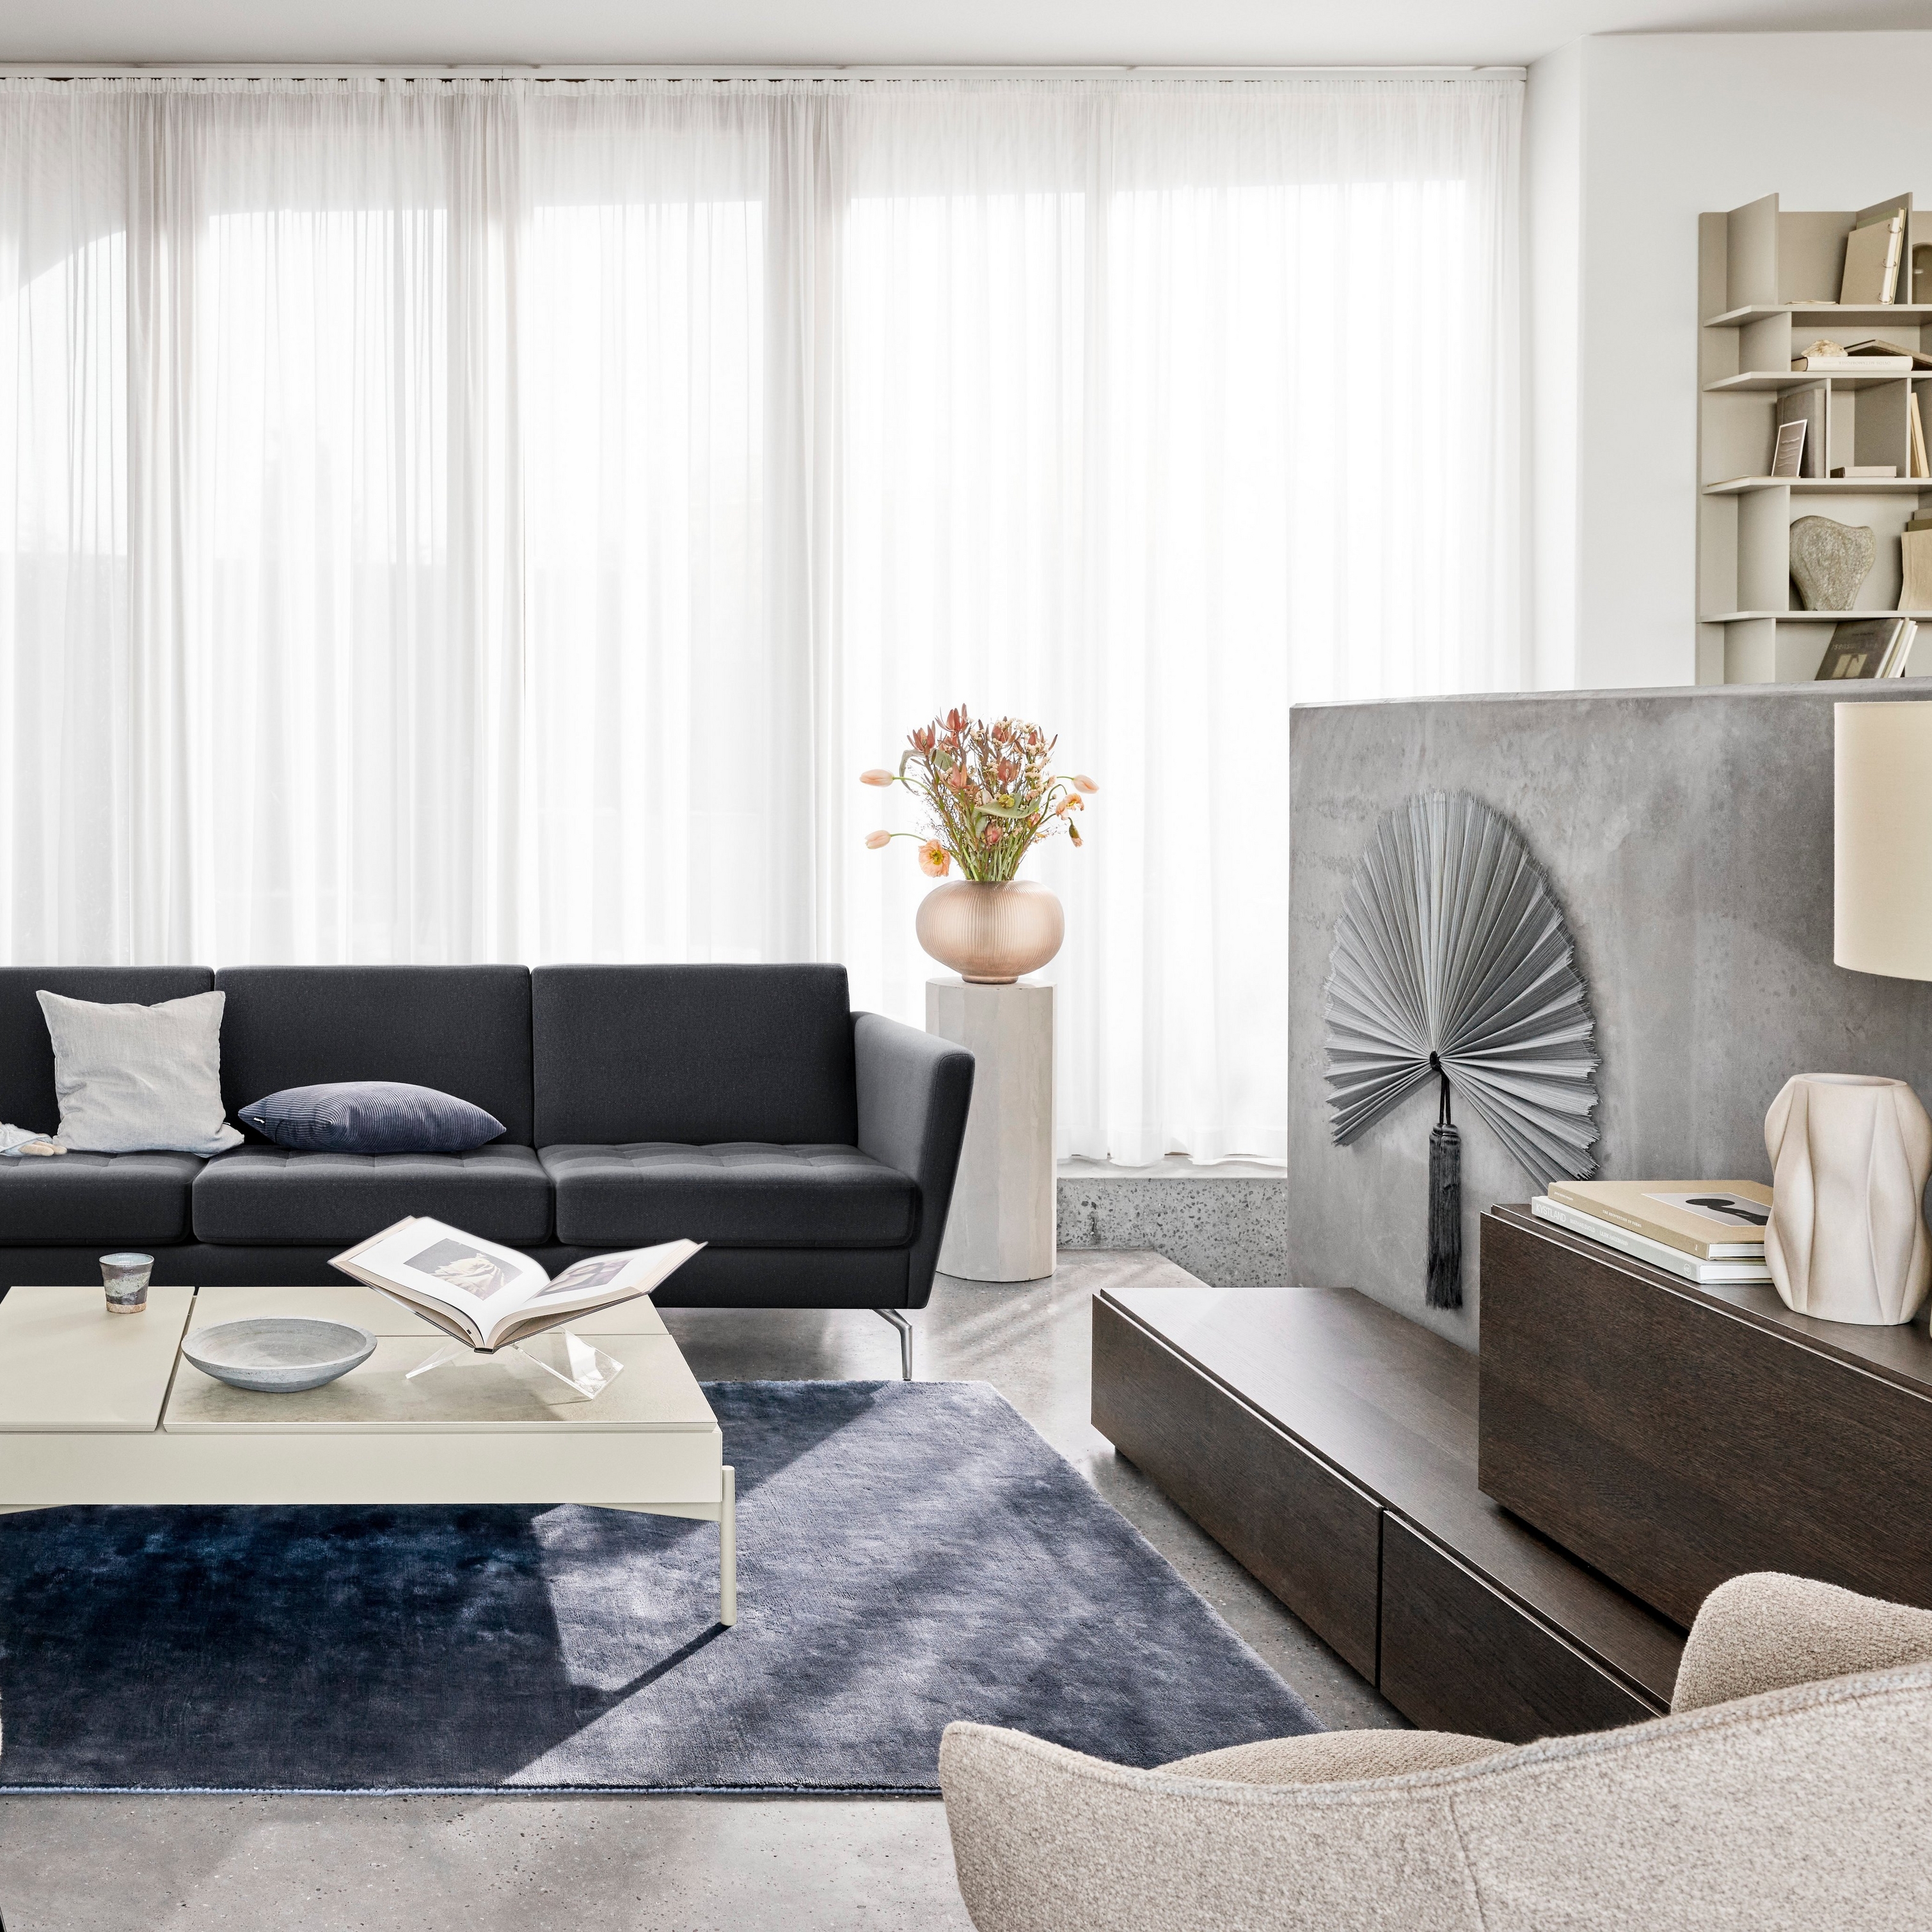 Sala de estar moderna com sofá preto, cadeiras, cortina transparente e elementos decorativos.